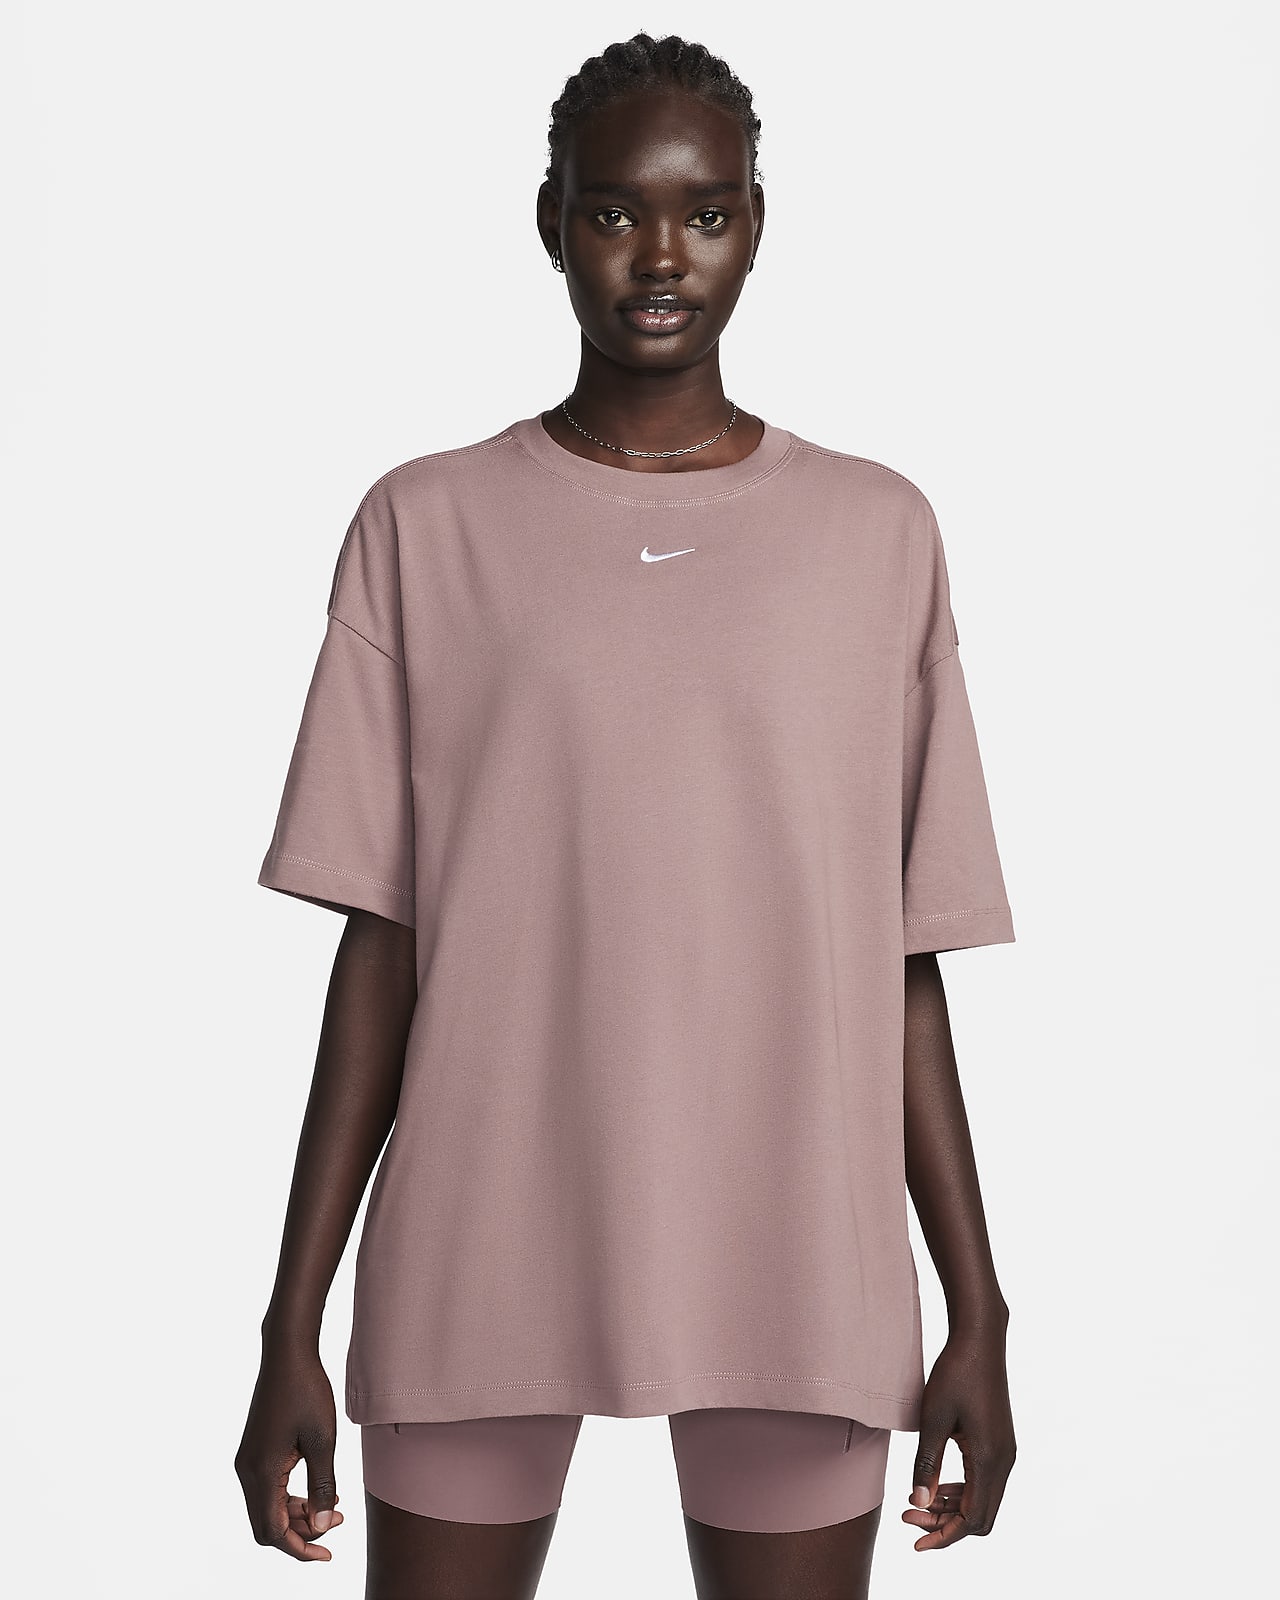 T-shirt femme Nike - T-shirts - Lifestyle Femme - Lifestyle